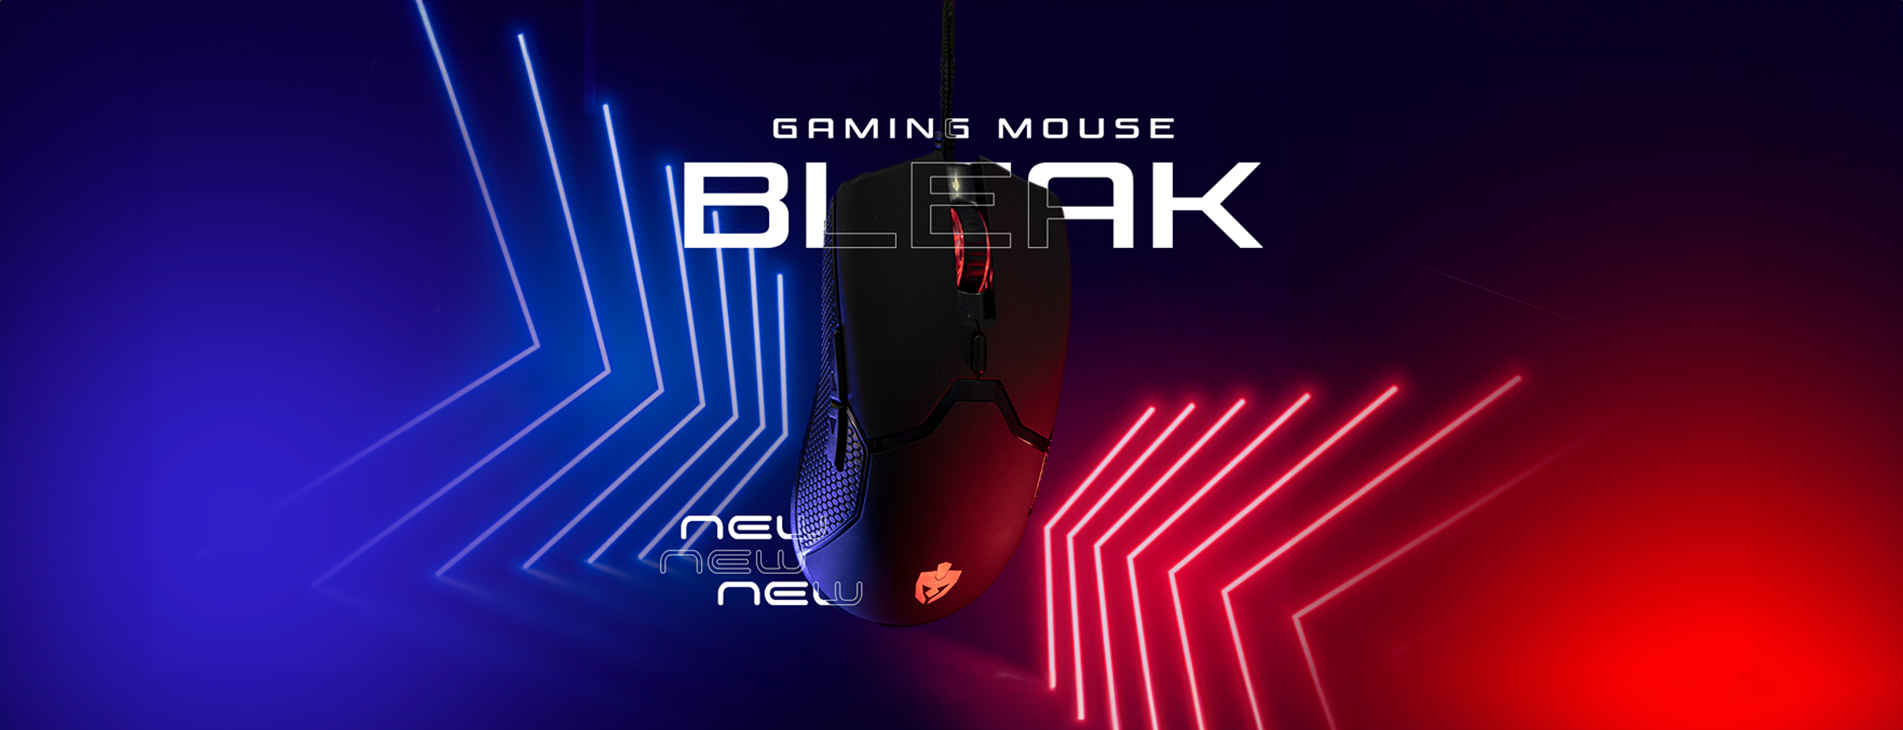 Descubra o conforto e a precisão do Mouse Bleak, projetado para elevar sua experiência de uso